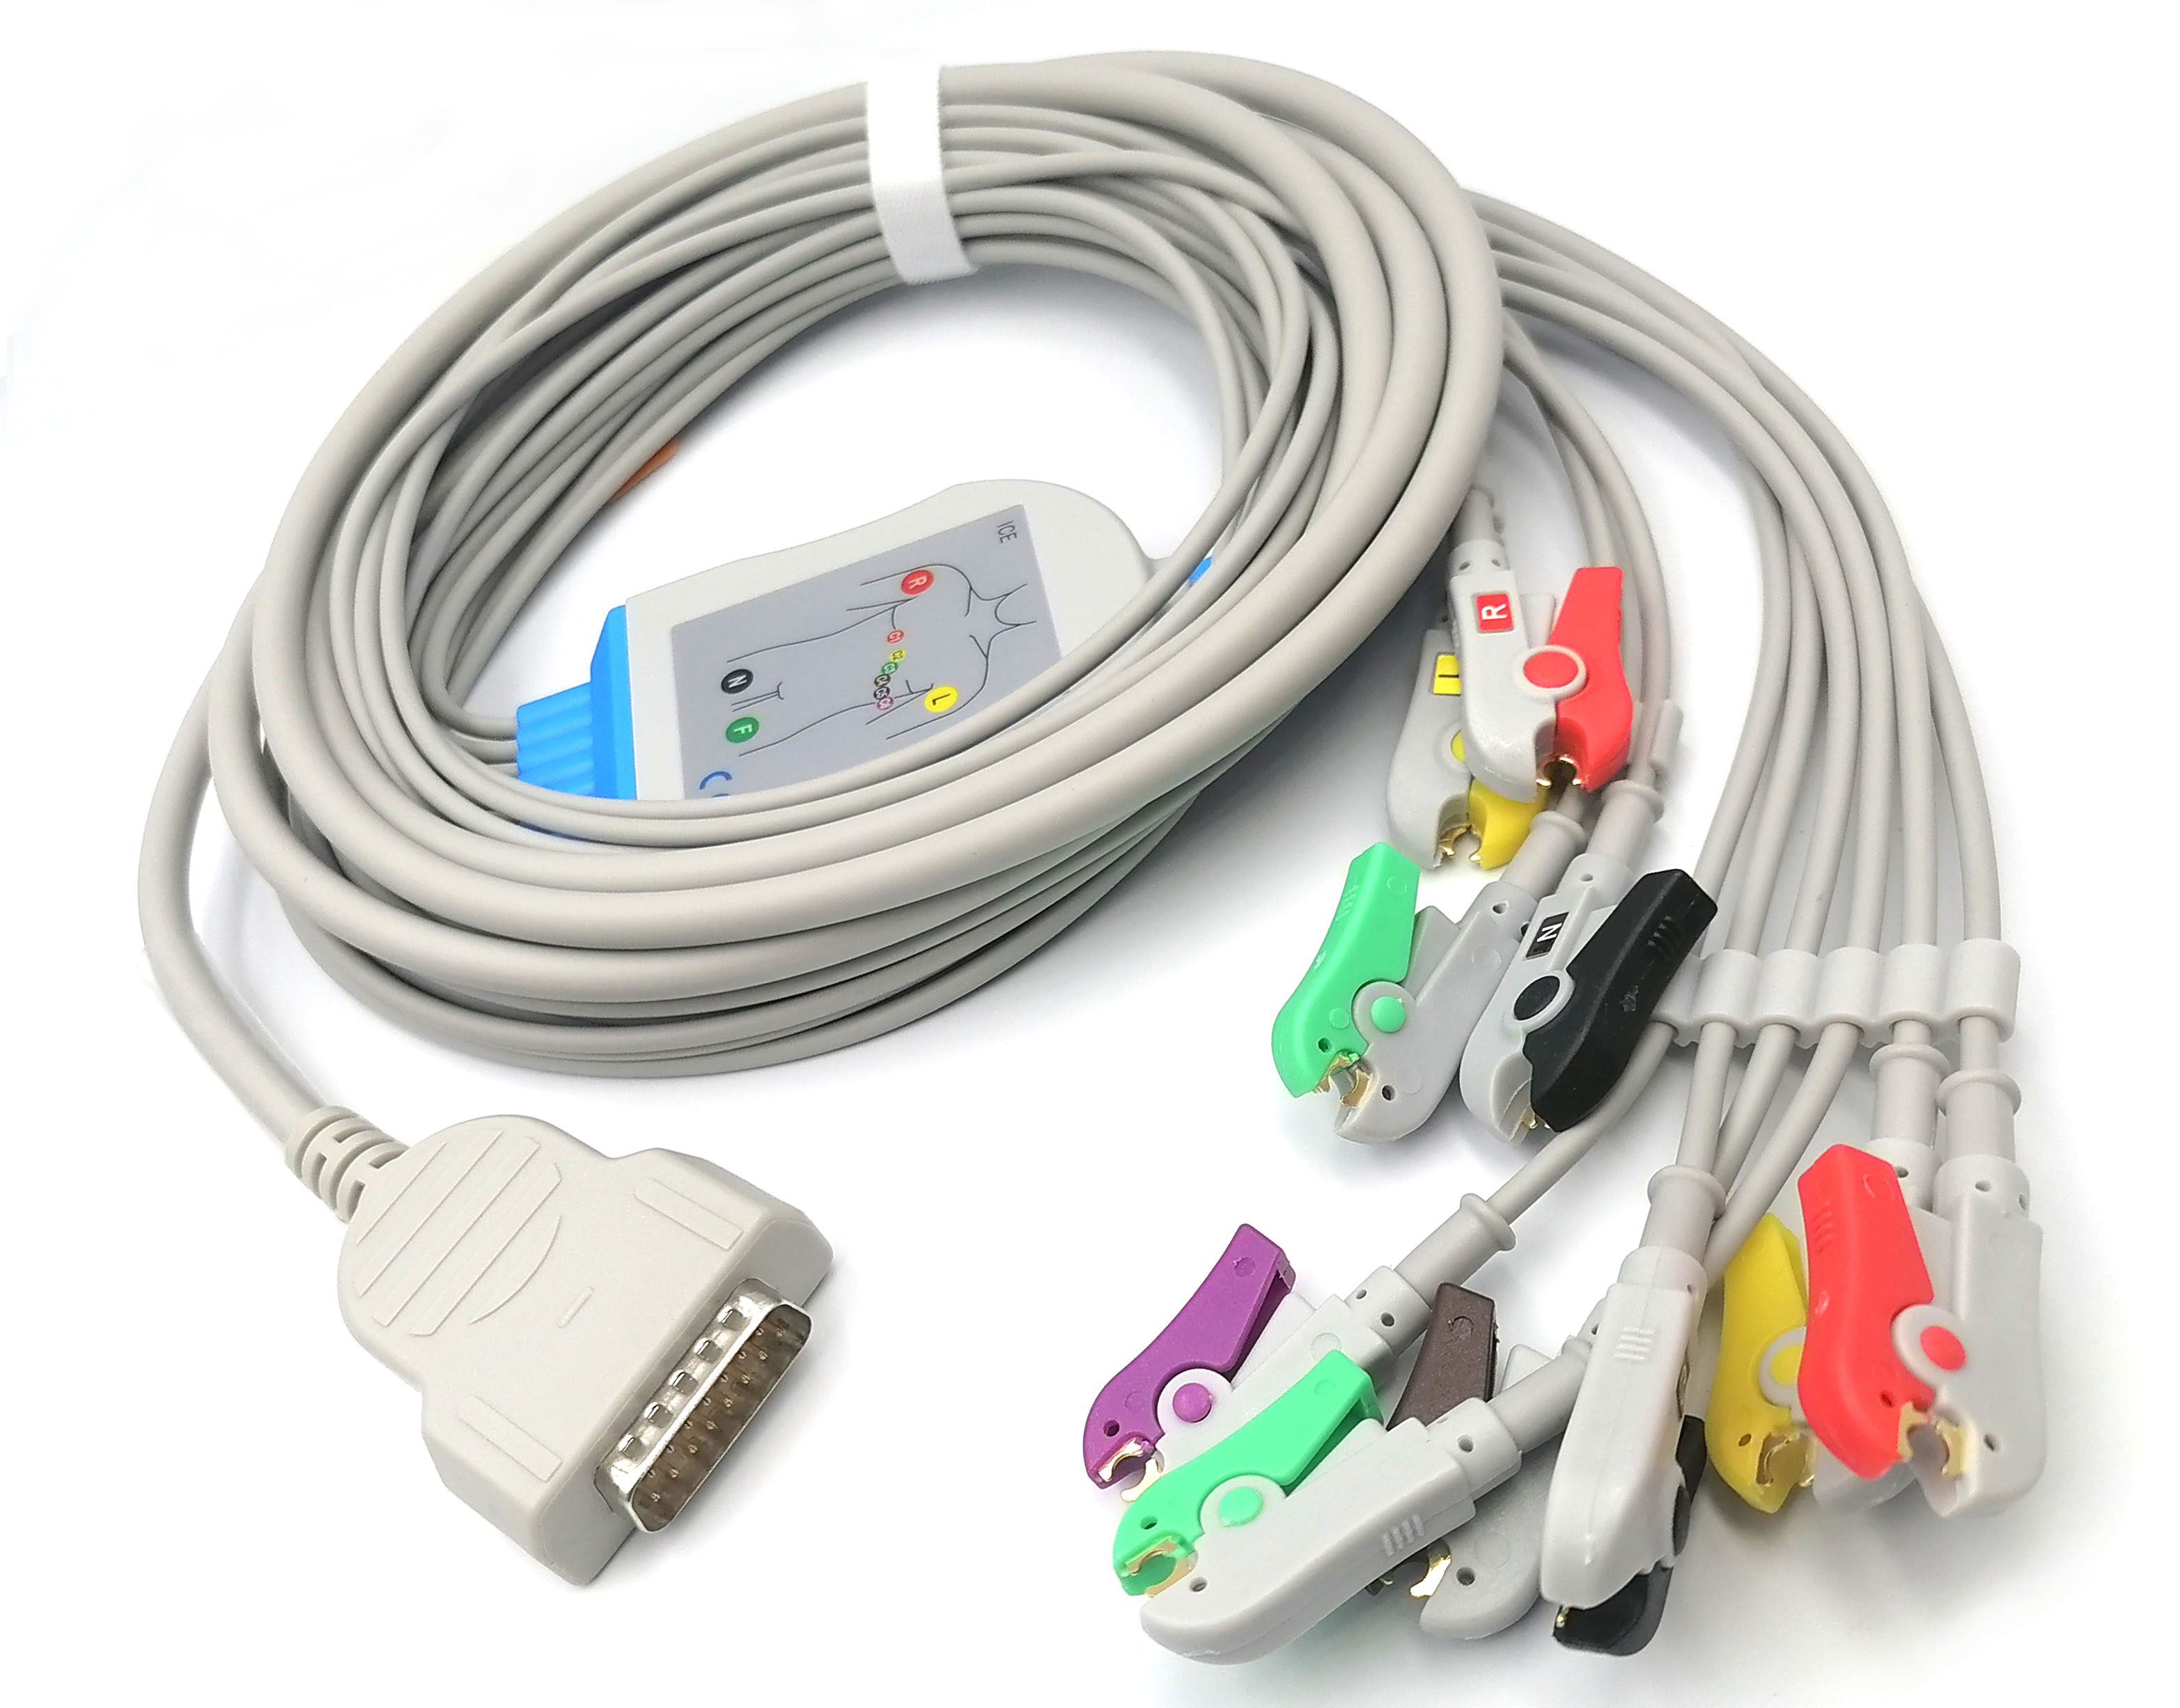 ЭКГ кабель пациента с интегрированными отведениями для GE Marquette  MAC 400, MAC 500, MAC 600, MAC 800, MAC 1000, MAC 1100, MAC 1200, MAC 1200ST, MAC 1600, MAC 2000, MAC 3500, Microsmart M, Hellige Micro Smart, 10 отведений, клипсы